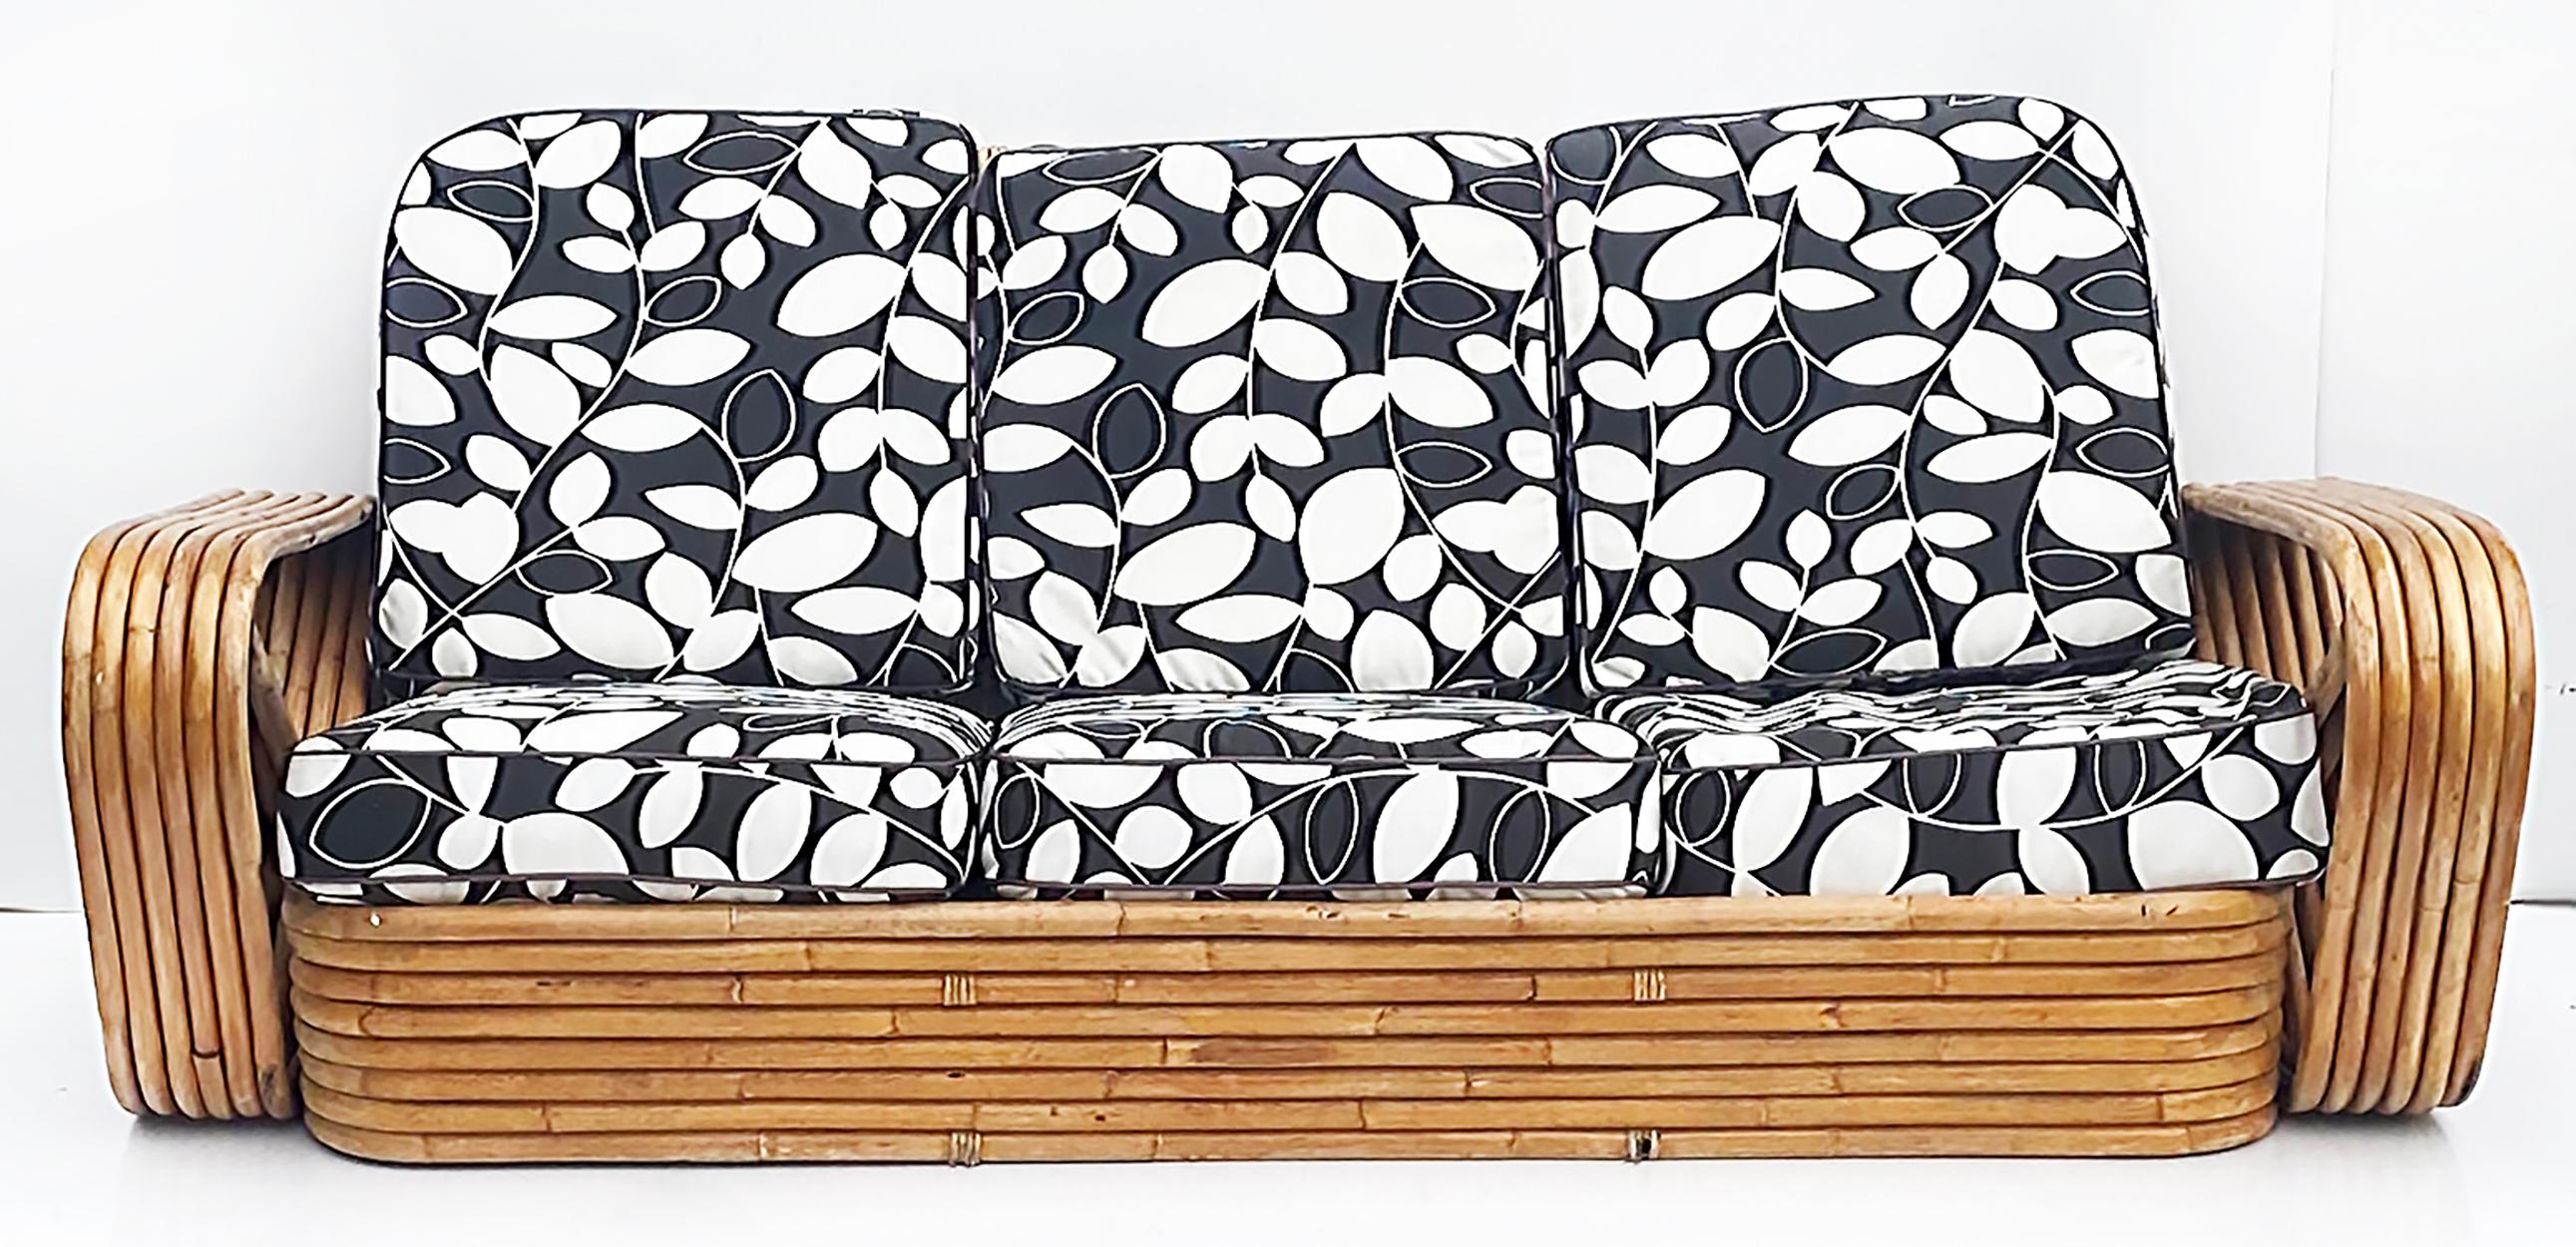 Paul Frankl Pretzel Sechssträngiges 3-sitziges Rattan-Bambus-Sofa

Zum Verkauf angeboten wird ein Paul Frankl sechssträngiges Dreisitzsofa aus Bambus und Rattan mit losen Sitz- und Rückenpolstern. Der Bezugsstoff ist ein schwarz-weißer Druck mit